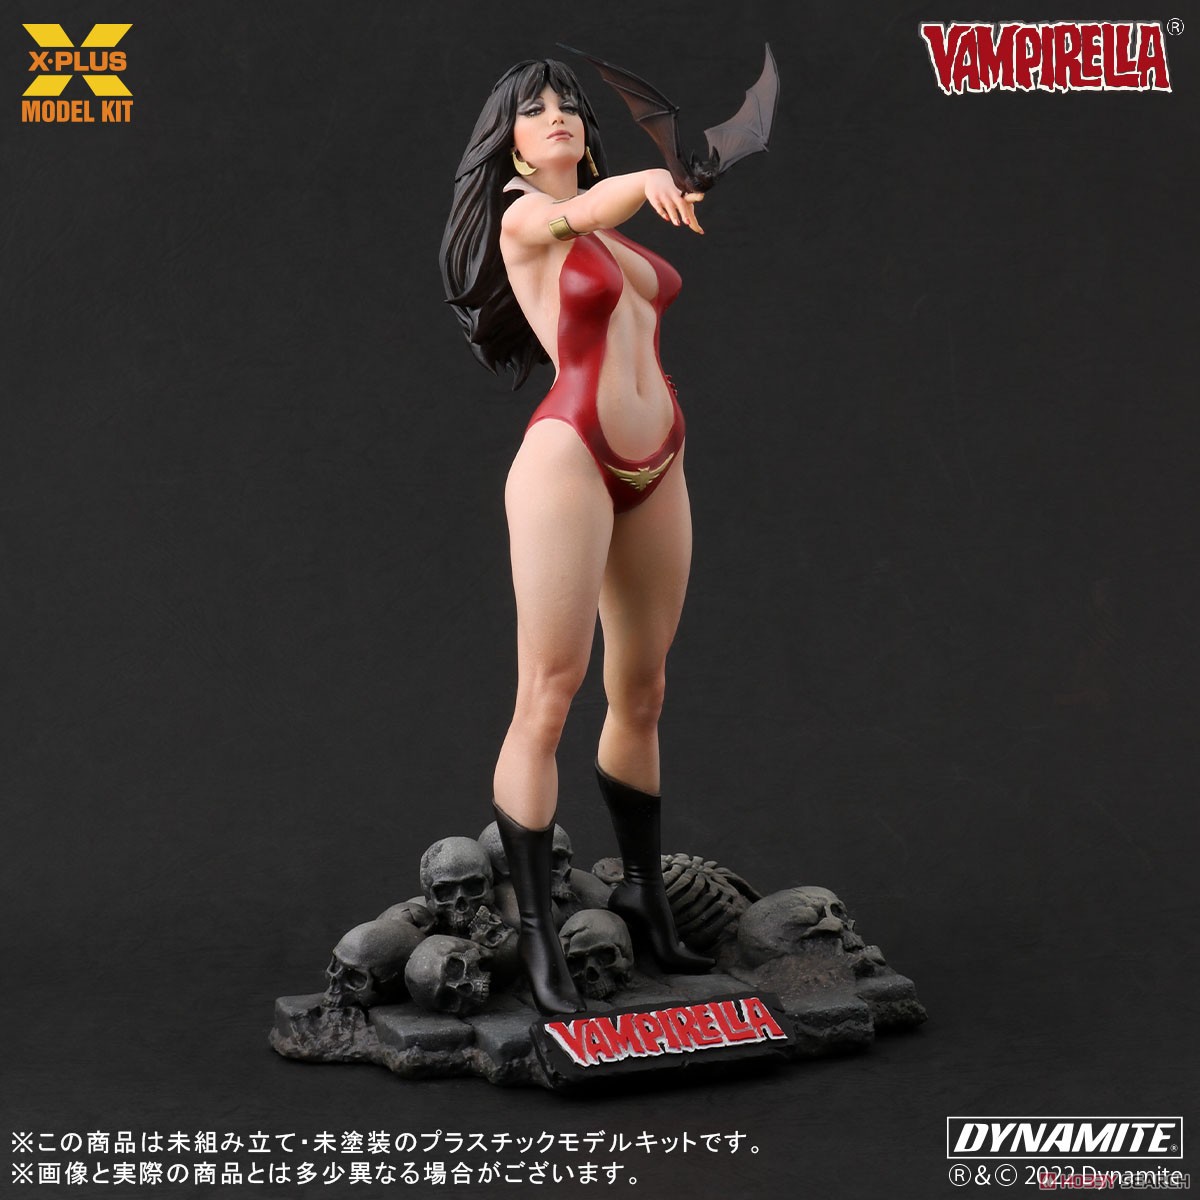 Vampirella『ヴァンピレラ ホセ・ゴンザレス エディション 』1/8スケール プラスチック モデルキット-001